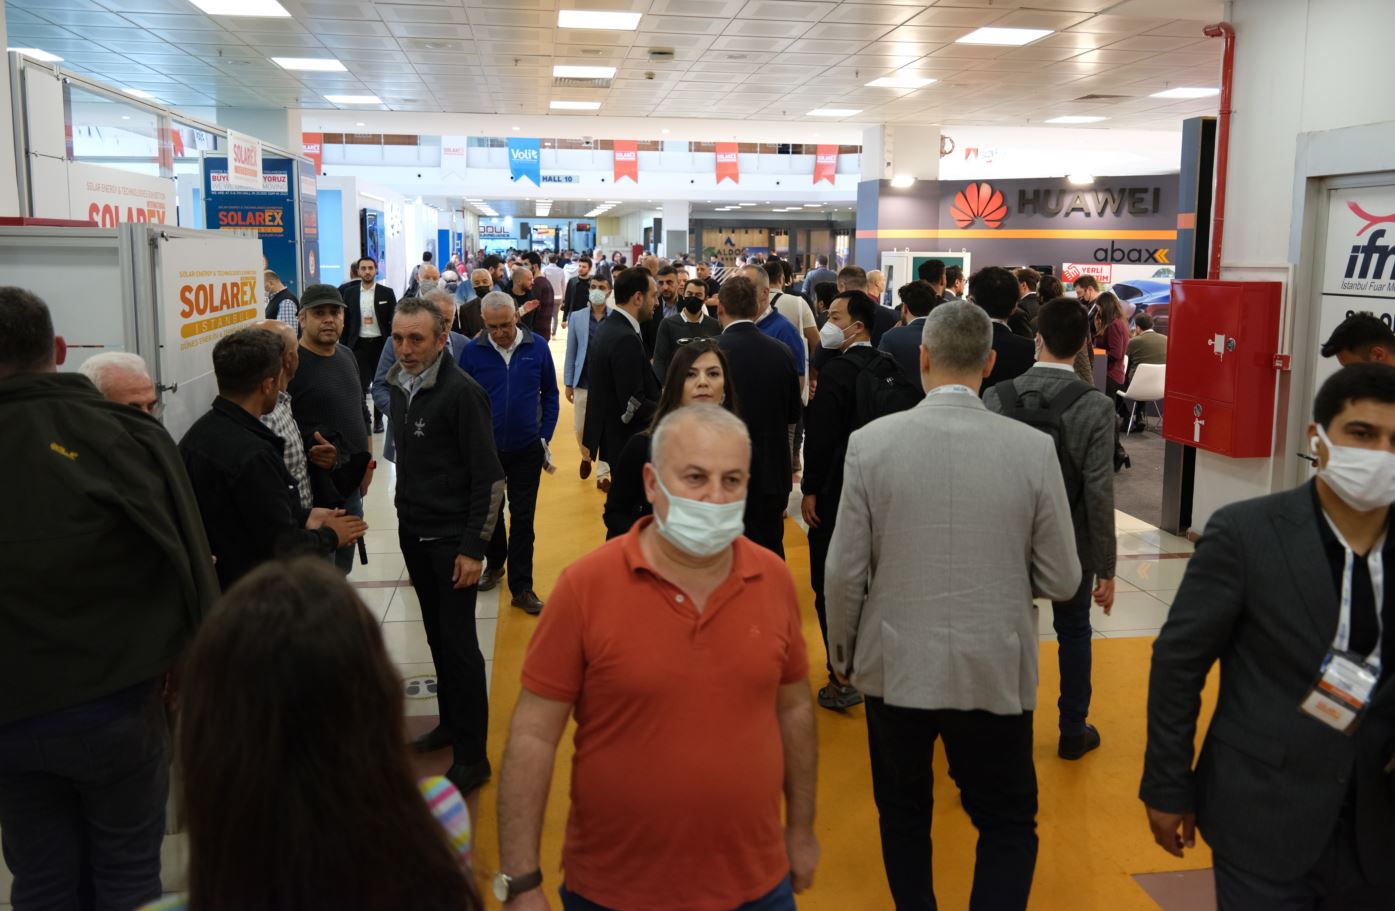 SolarEX İstanbul 97 Ülkeden 35.000 Yatırımcıyı Ağırladı 